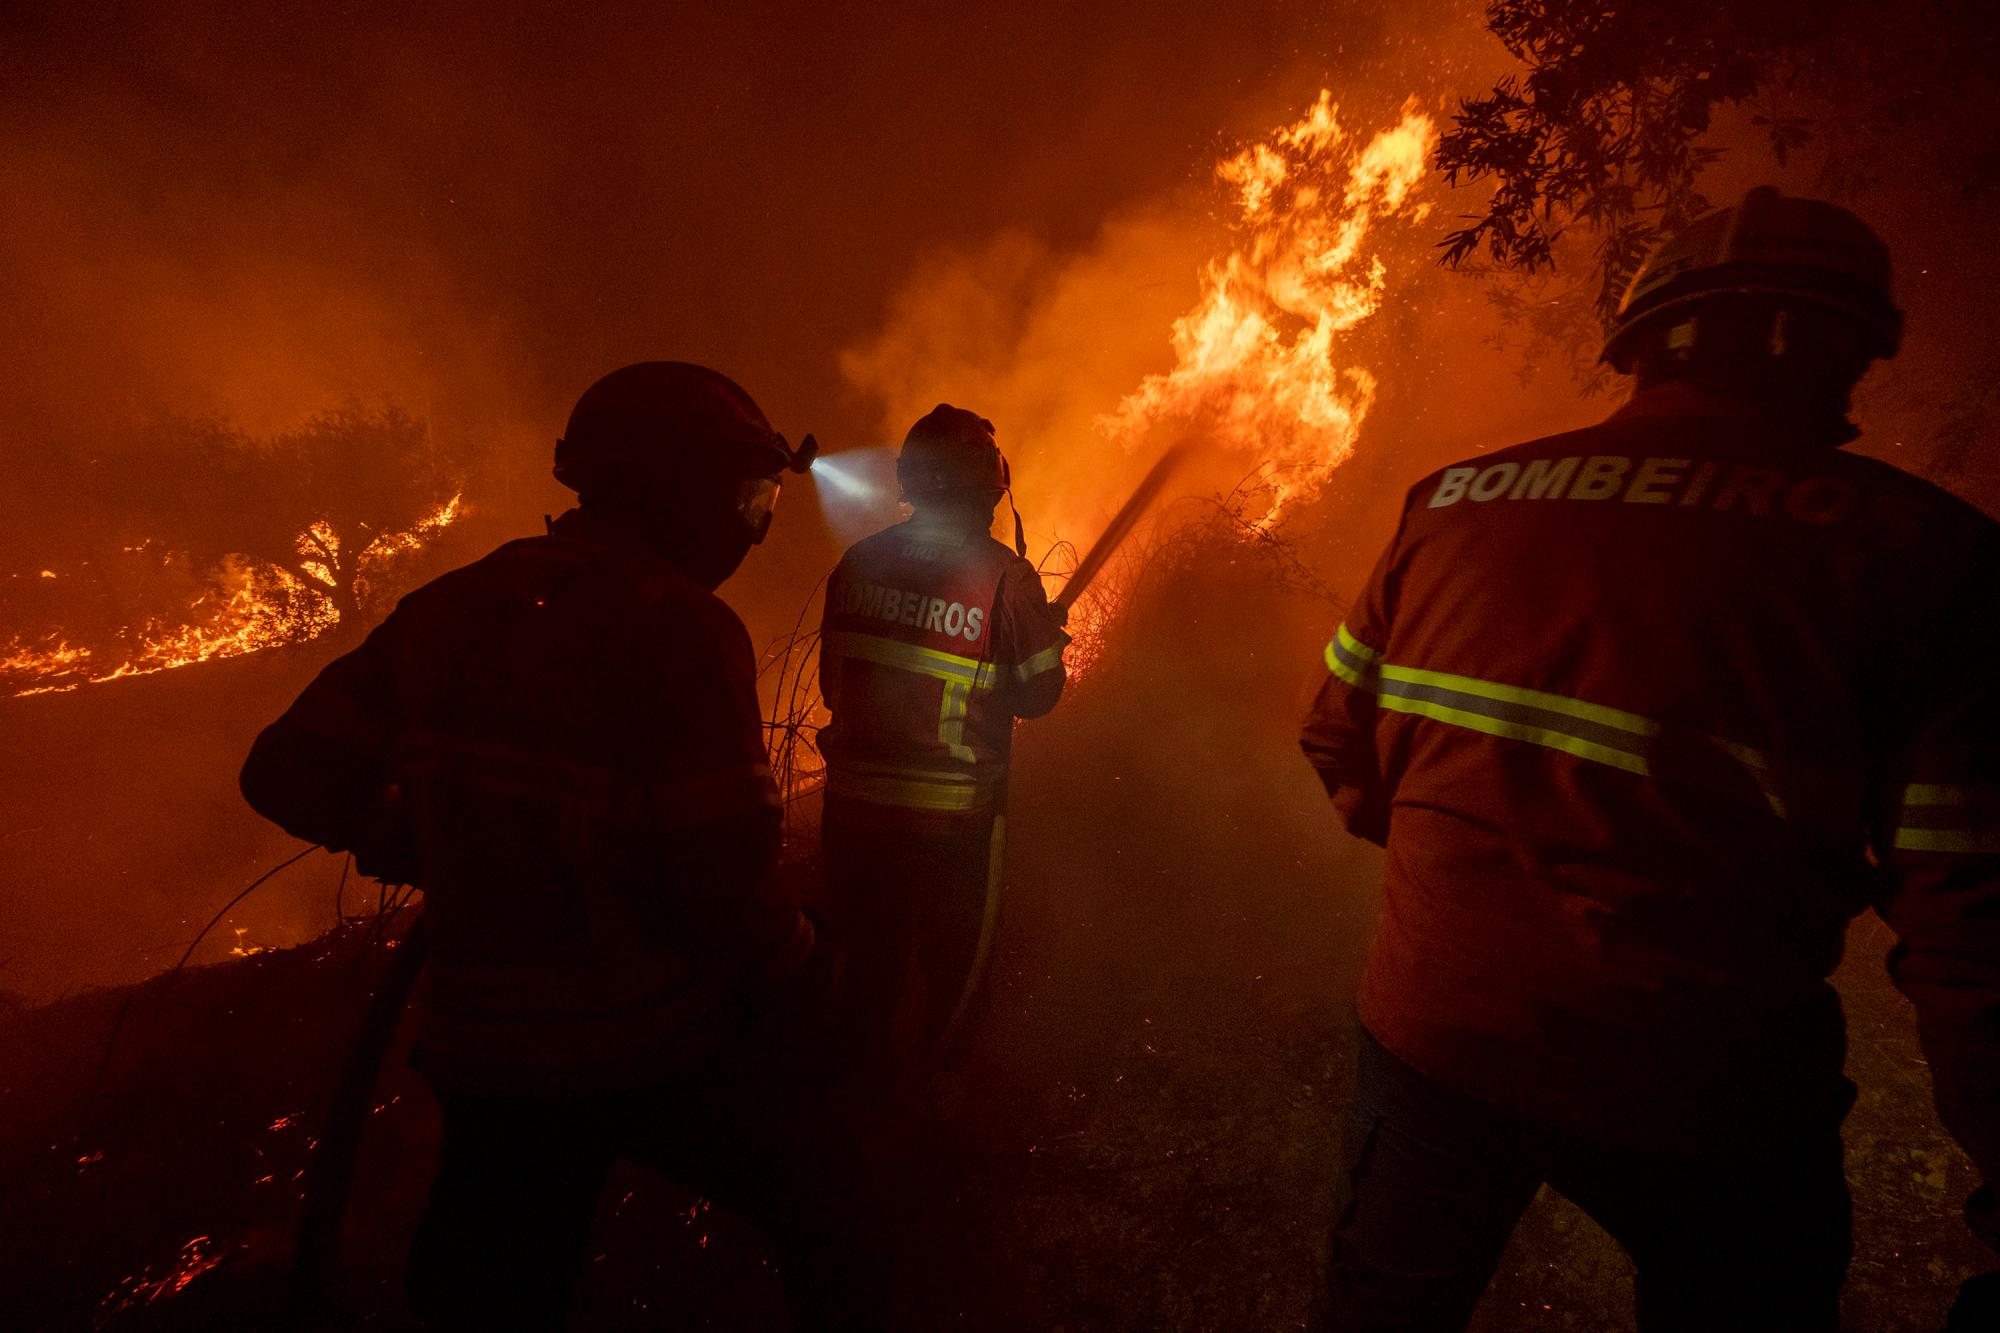 Los bomberos intentan extinguir un incendio forestal cerca de la aldea de Cardigos, en el centro de Portugal, el domingo 21 de julio de 2019. Unos 1.800 bomberos luchaban por contener los incendios en el centro de Portugal que ya han herido a 20 personas, incluidos ocho bomberos, dijeron las autoridades el domingo.